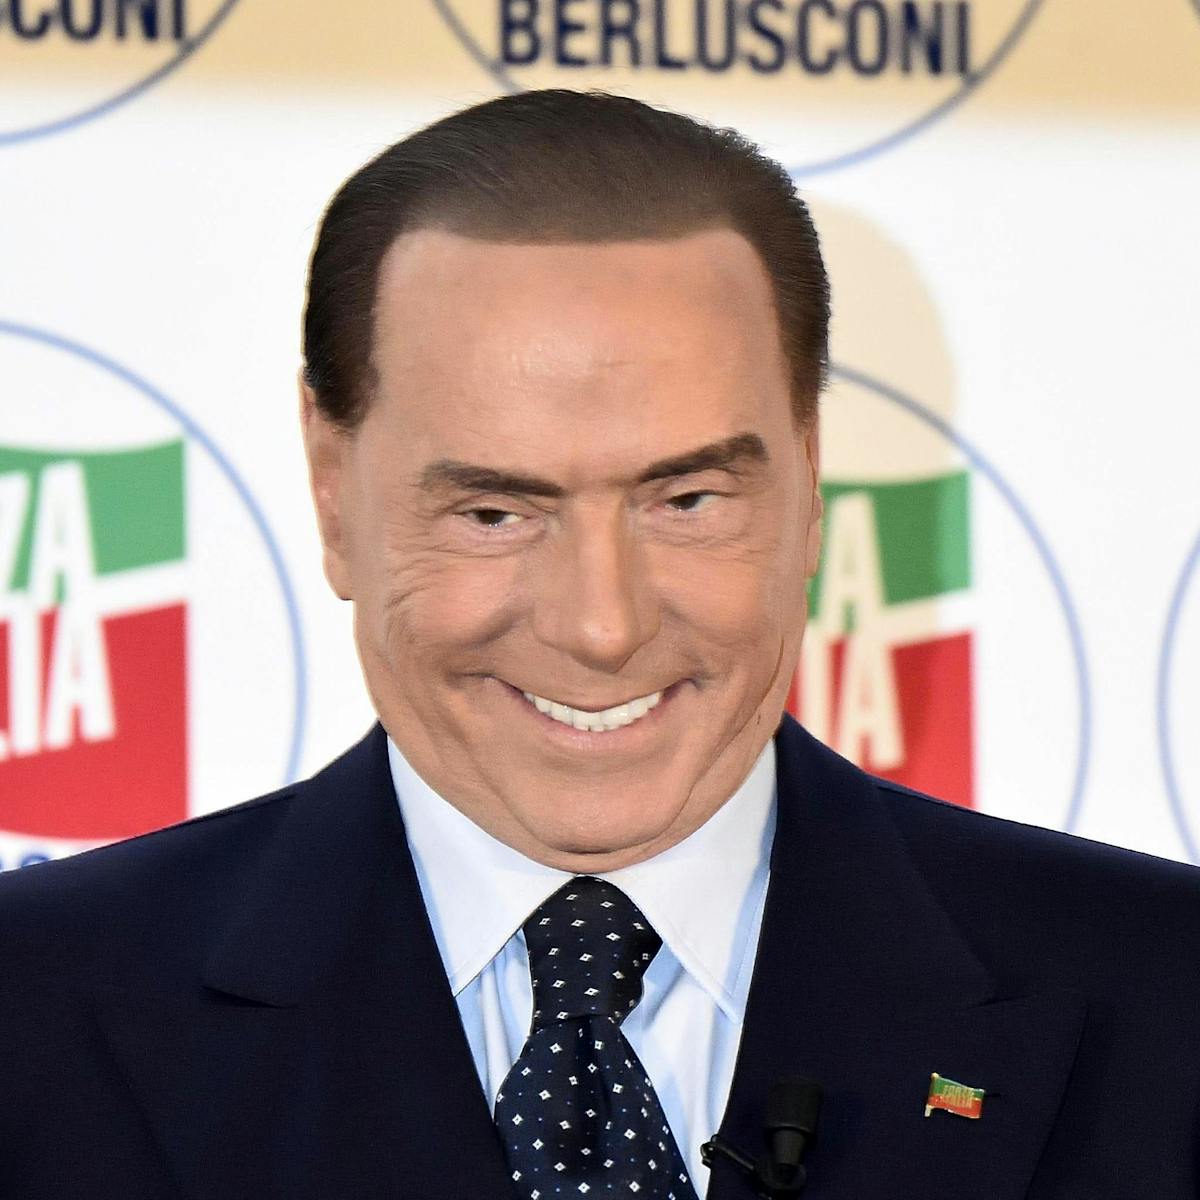 Berlusconi (83) snimljen s novom djevojkom (30), bivša mu otišla u lezbejke File-20180226-140217-126cca1.jpg?ixlib=rb-1.1.0&q=45&auto=format&w=1200&h=1200